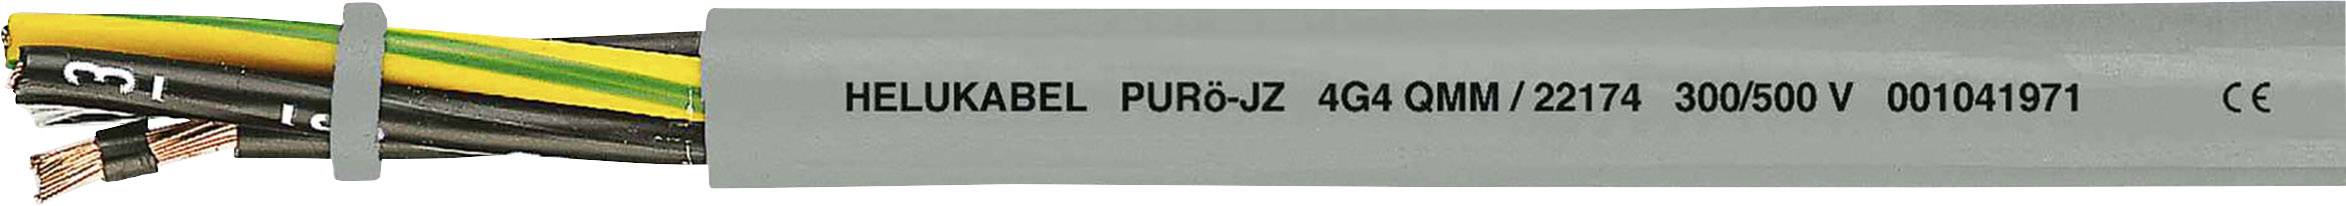 HELUKABEL PURö-JZ Steuerleitung 5 G 1 mm² Grau 22135 100 m